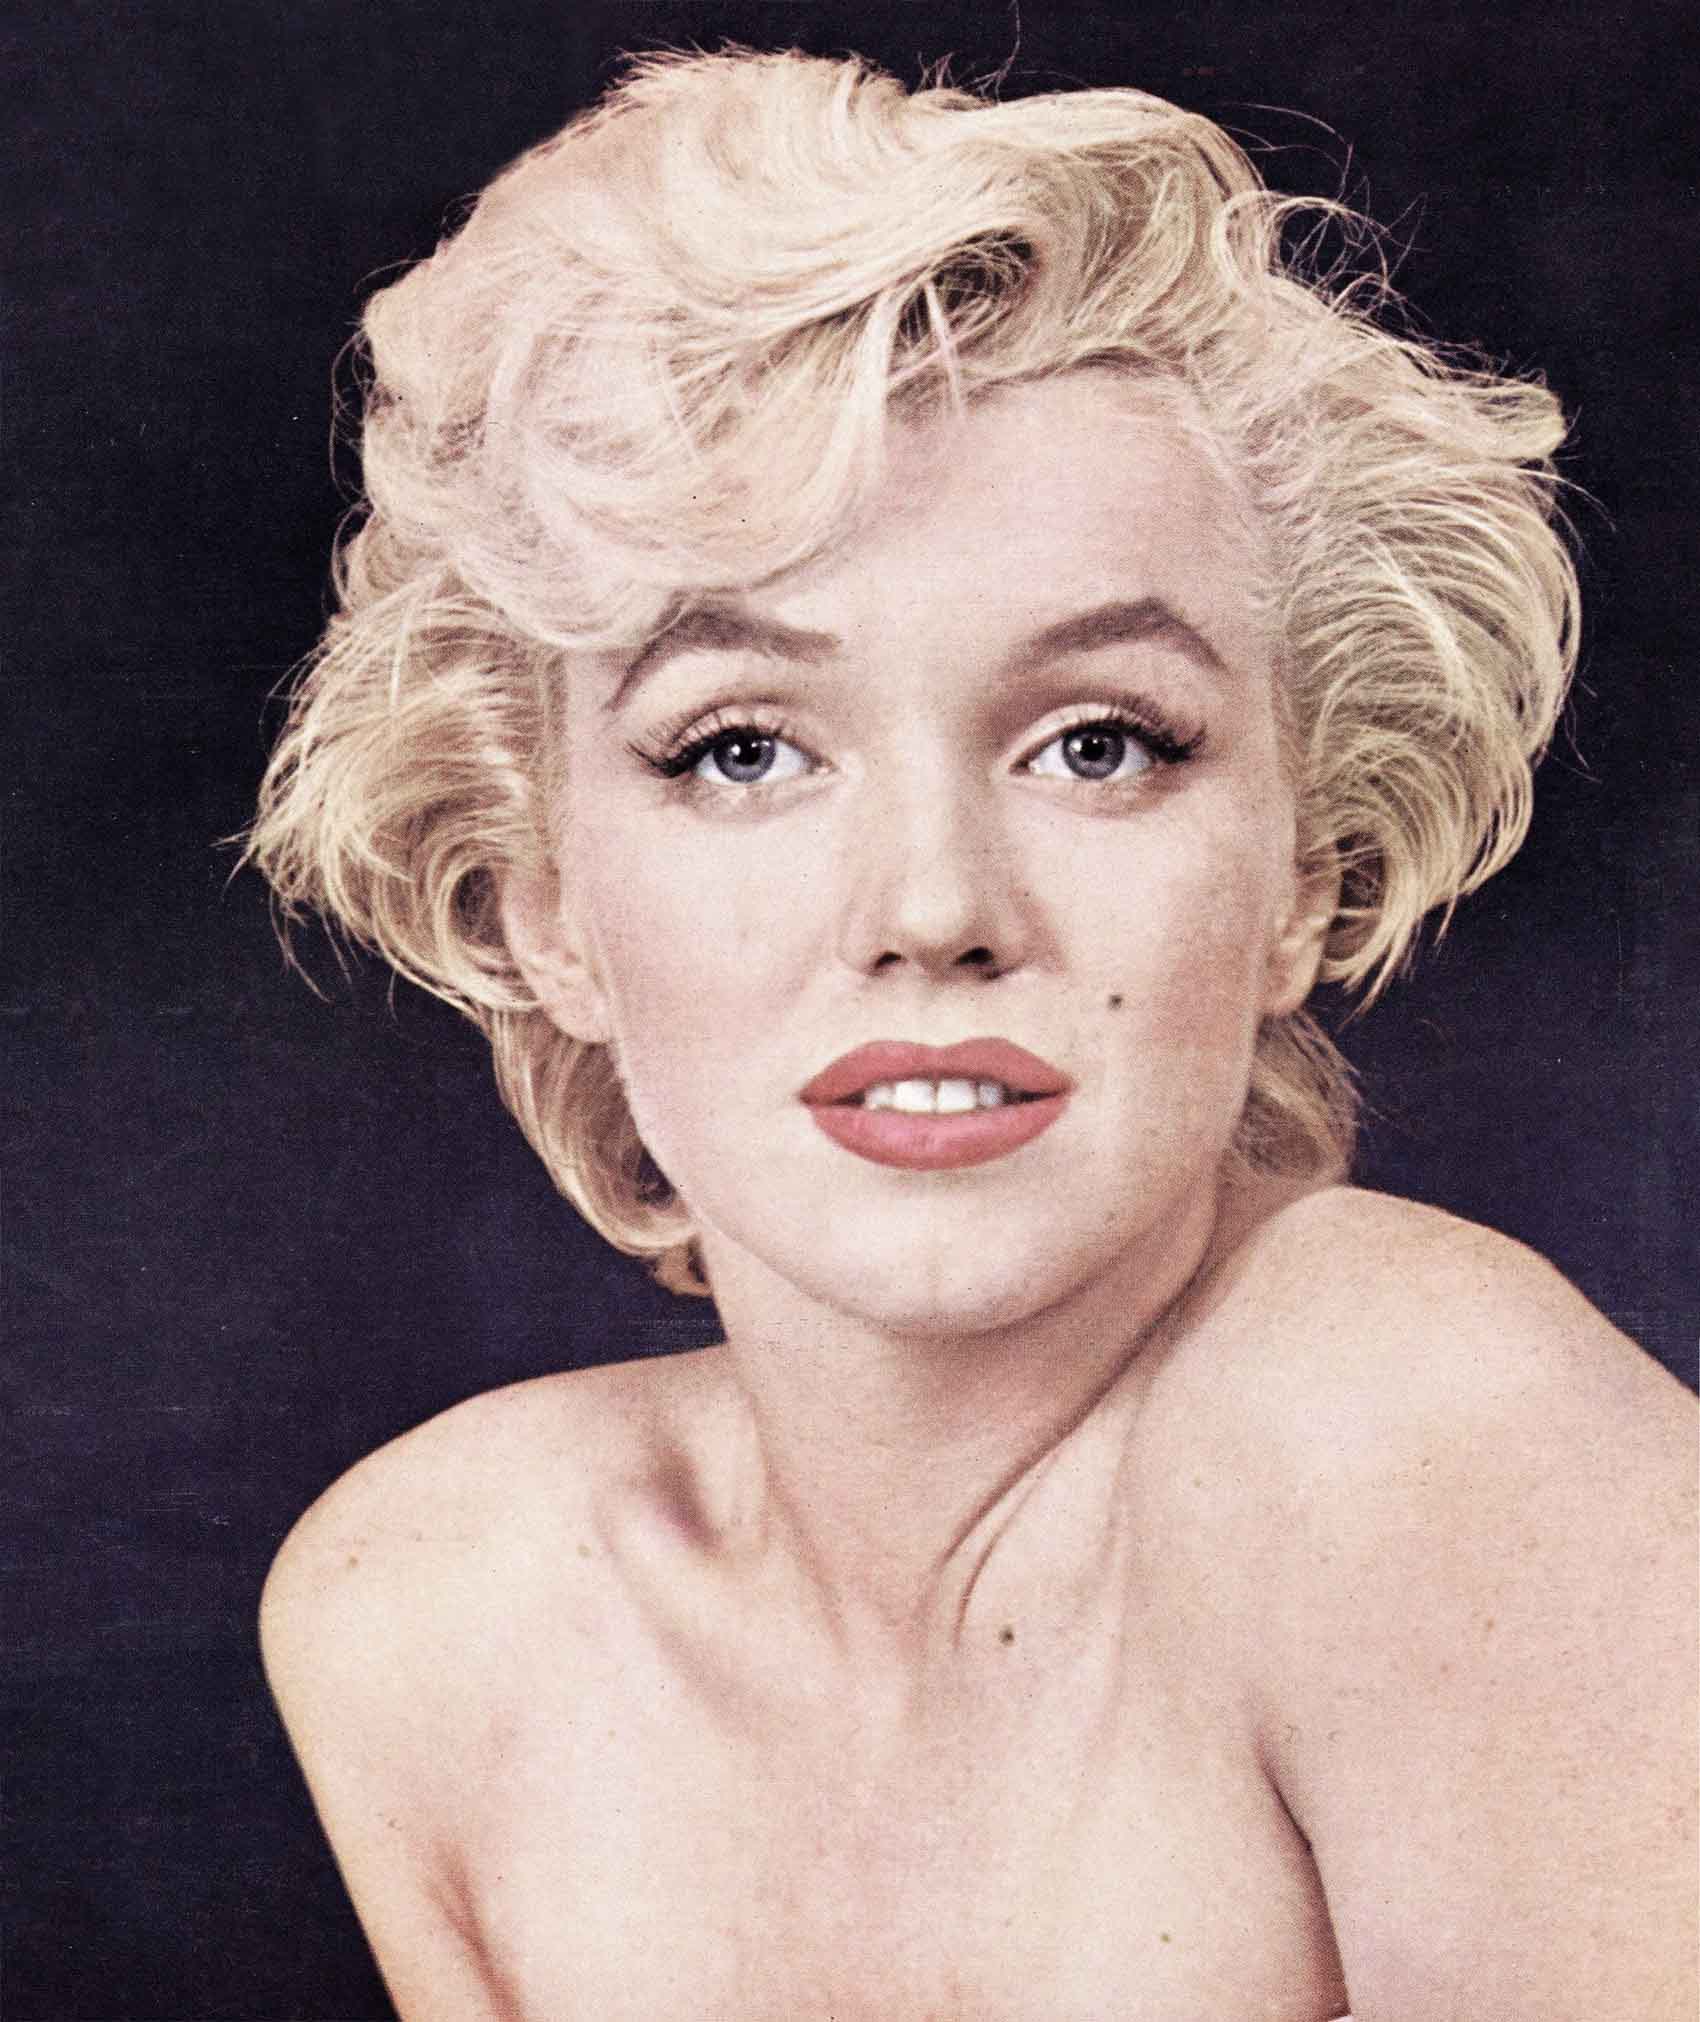 Blonde': Why Marilyn Monroe's naked ending is 'haunting' (spoilers)